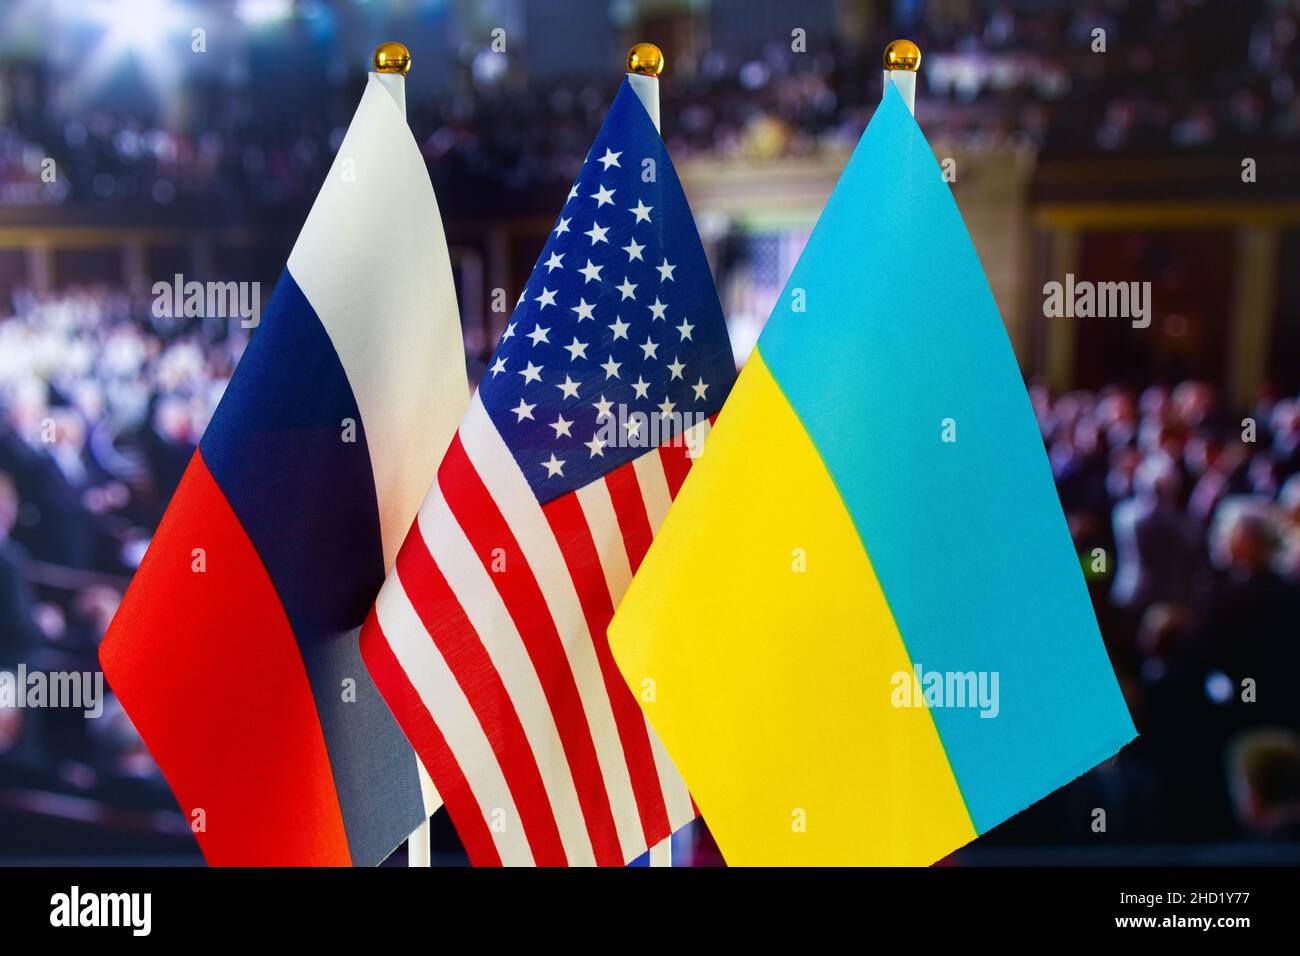 Die US-Flagge, die russische Flagge, die ukrainische Flagge. Flagge der USA, Flagge Russlands, Flagge der Ukraine. Die Vereinigten Staaten von Amerika und die Russische Föderation konfron Stockfoto